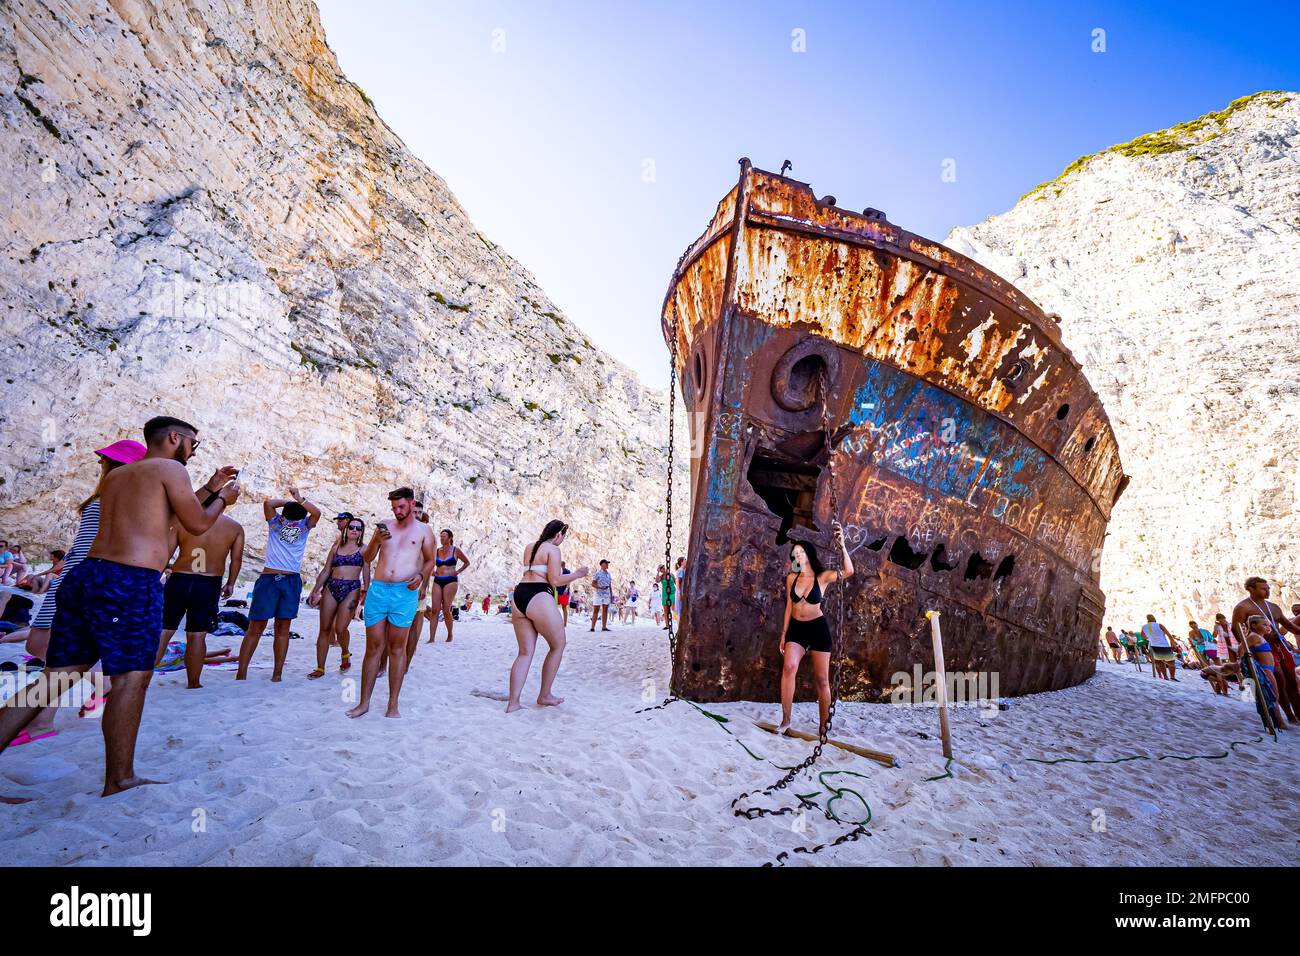 Vista escénica del viejo naufragio oxidado varado en la playa de Navagio (Smugglers Cove) en la isla de Zakynthos en Grecia, rodeado de altos acantilados Foto de stock